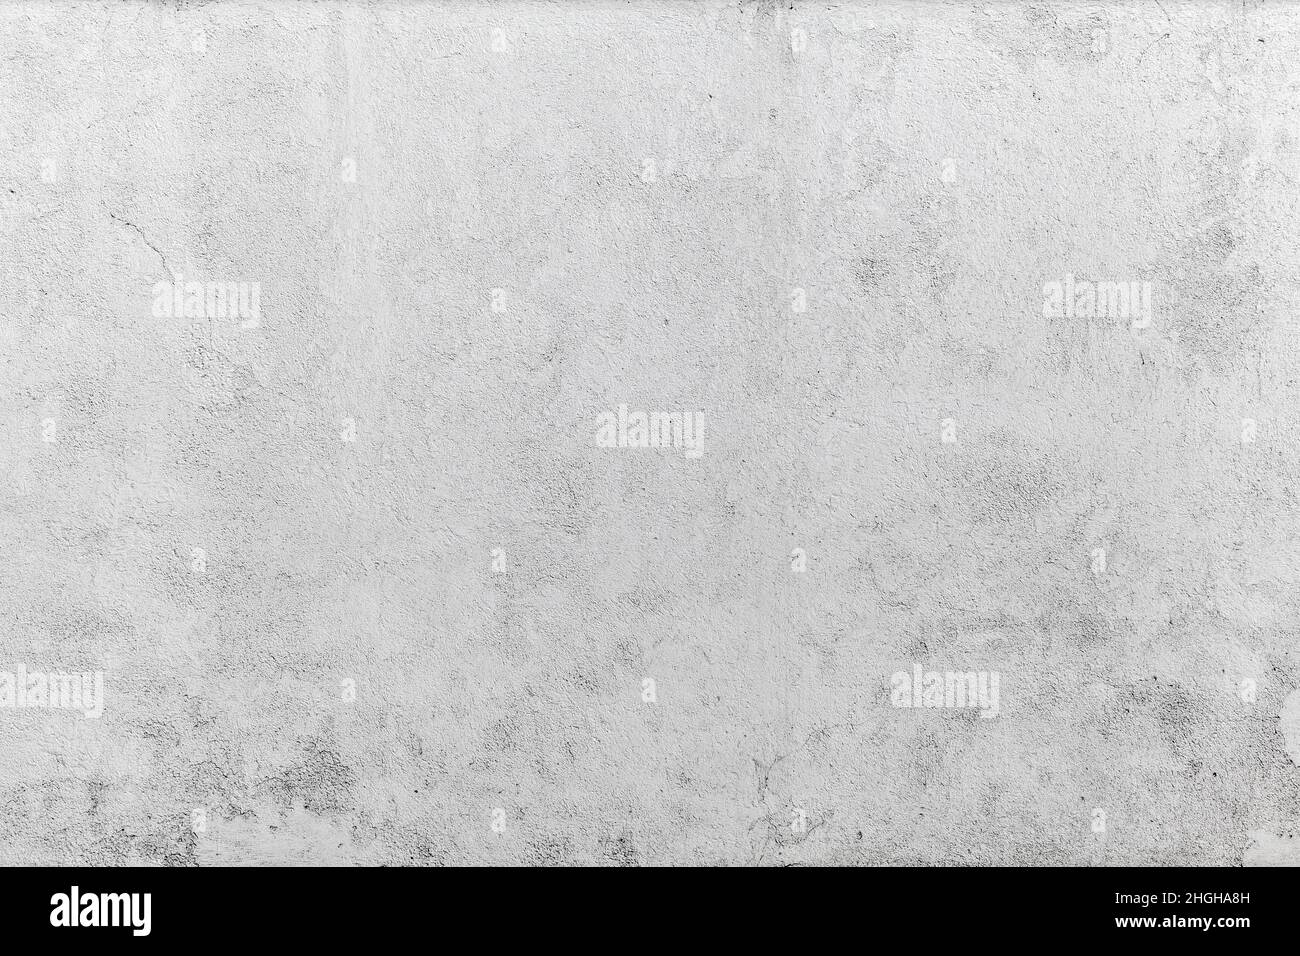 Mur en béton blanc avec plâtrage, texture photo d'arrière-plan plate, gros plan Banque D'Images